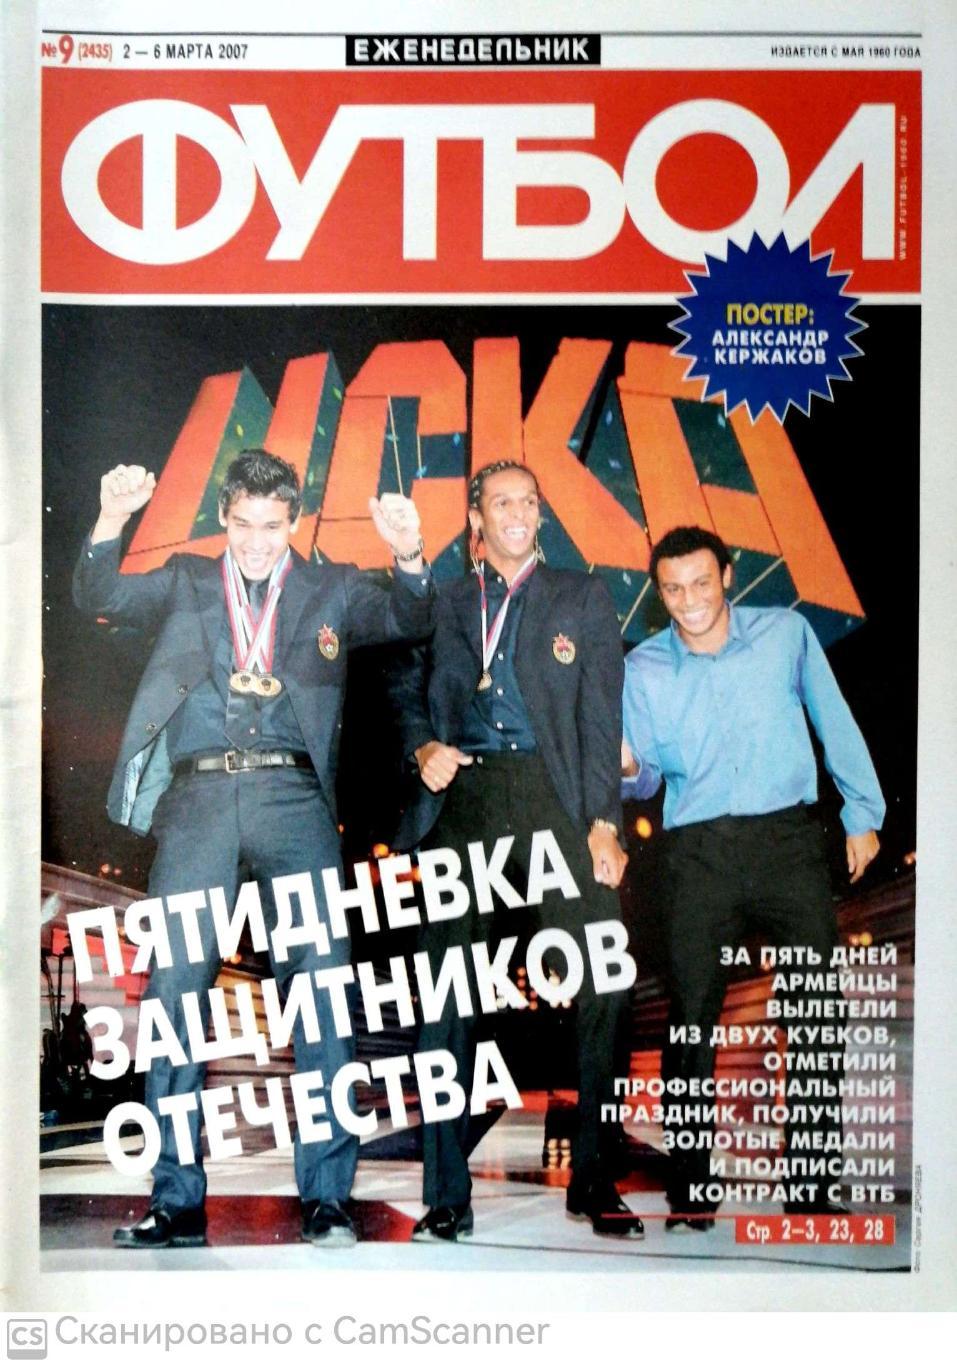 Еженедельник «Футбол» (Москва). 2007 год. №9 постер кержаков